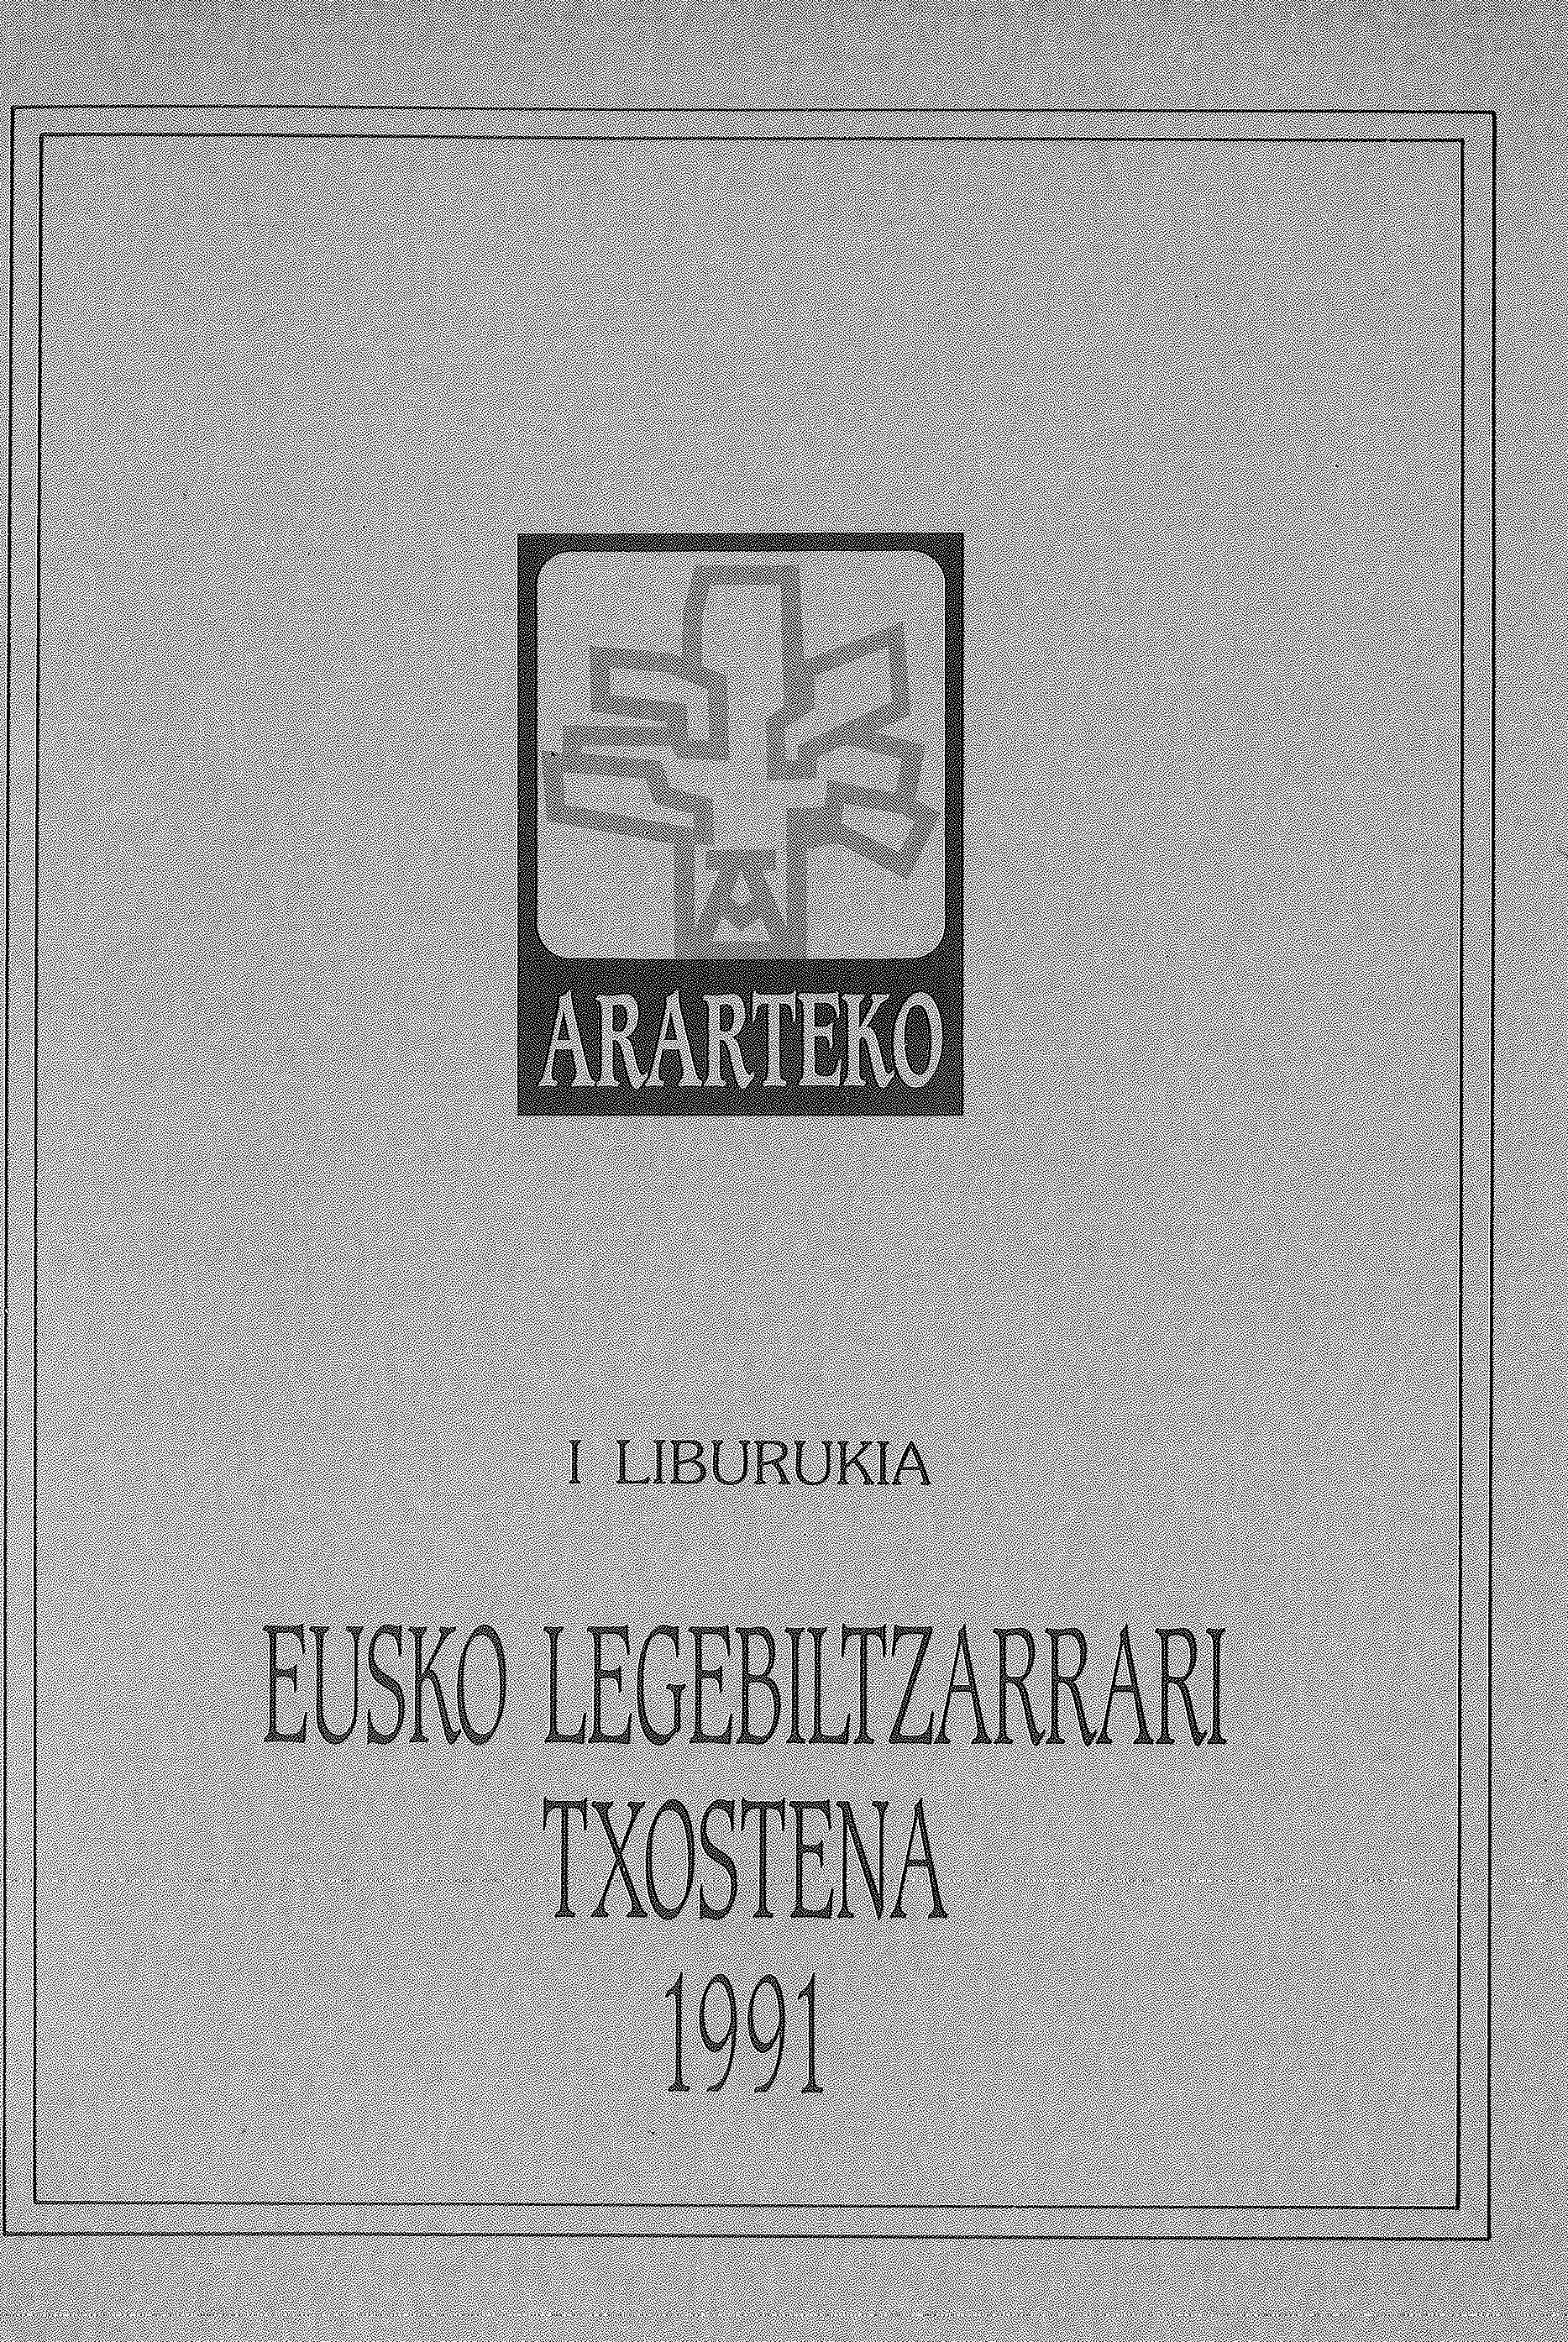 Arartekoaren txostena  Eusko Legebiltzarrari 1991. urtea